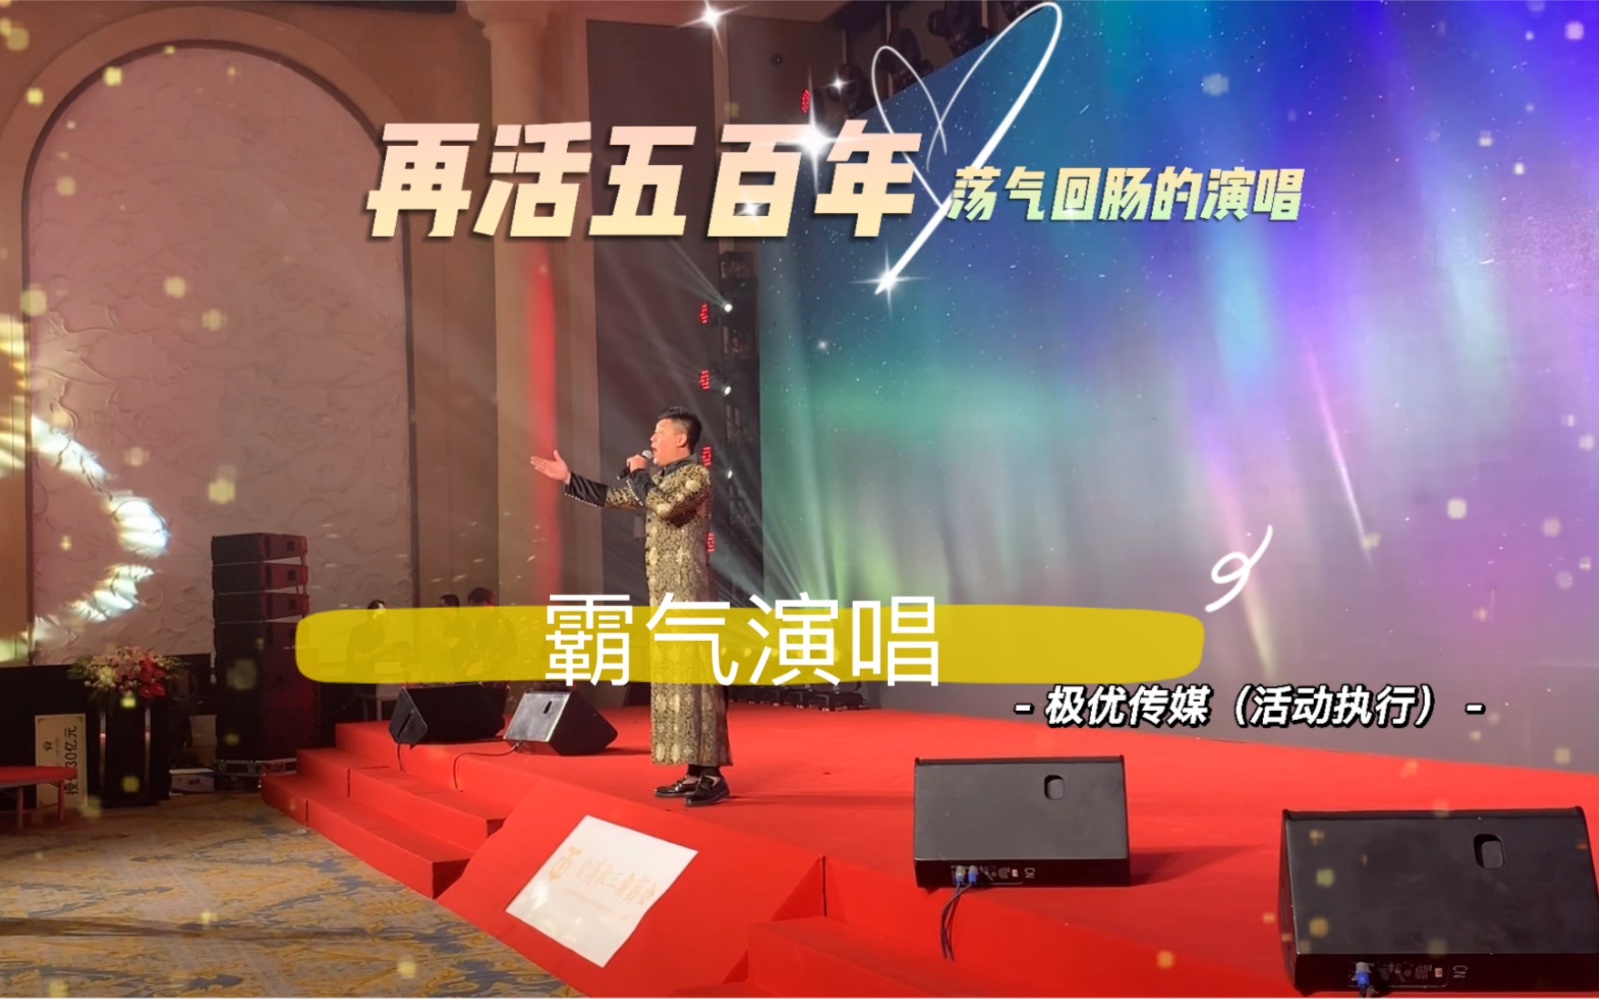 活动作品这个明星模仿秀演员把韩磊老师的经典曲目向天再借五百年翻唱